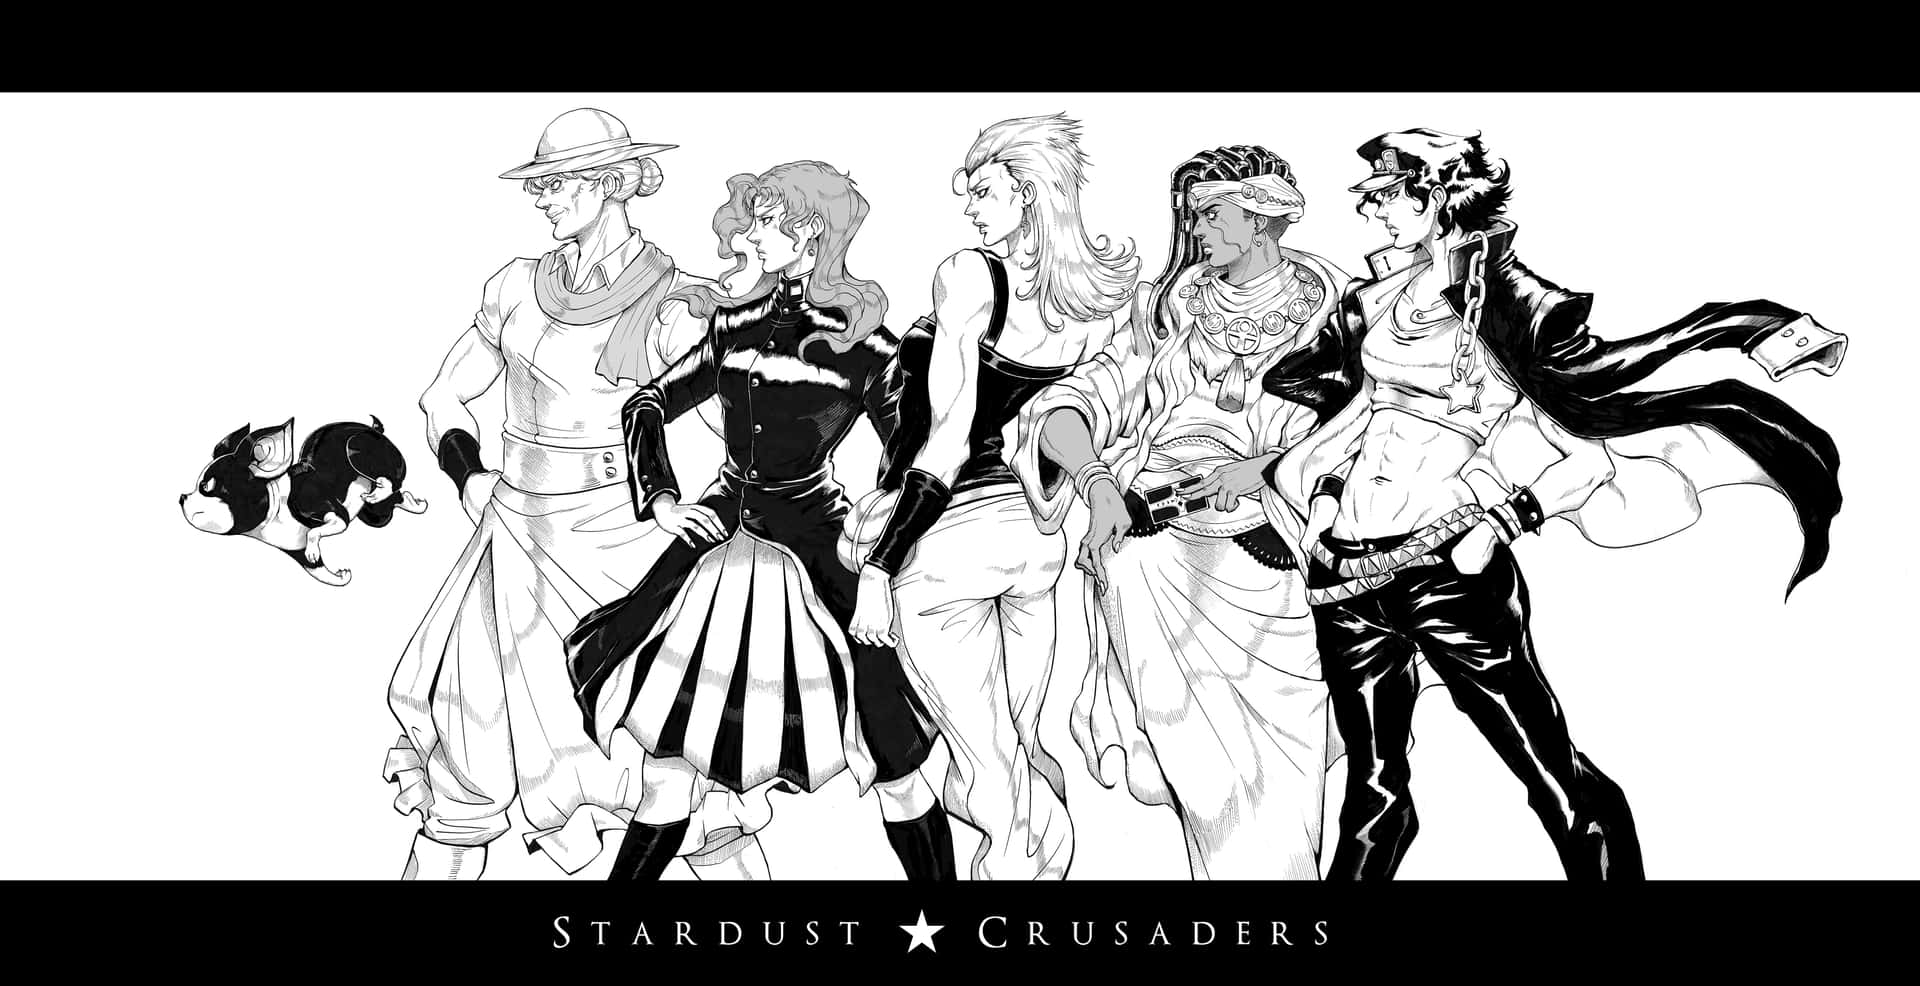 Joestar Group on their journey in Stardust Crusaders Wallpaper